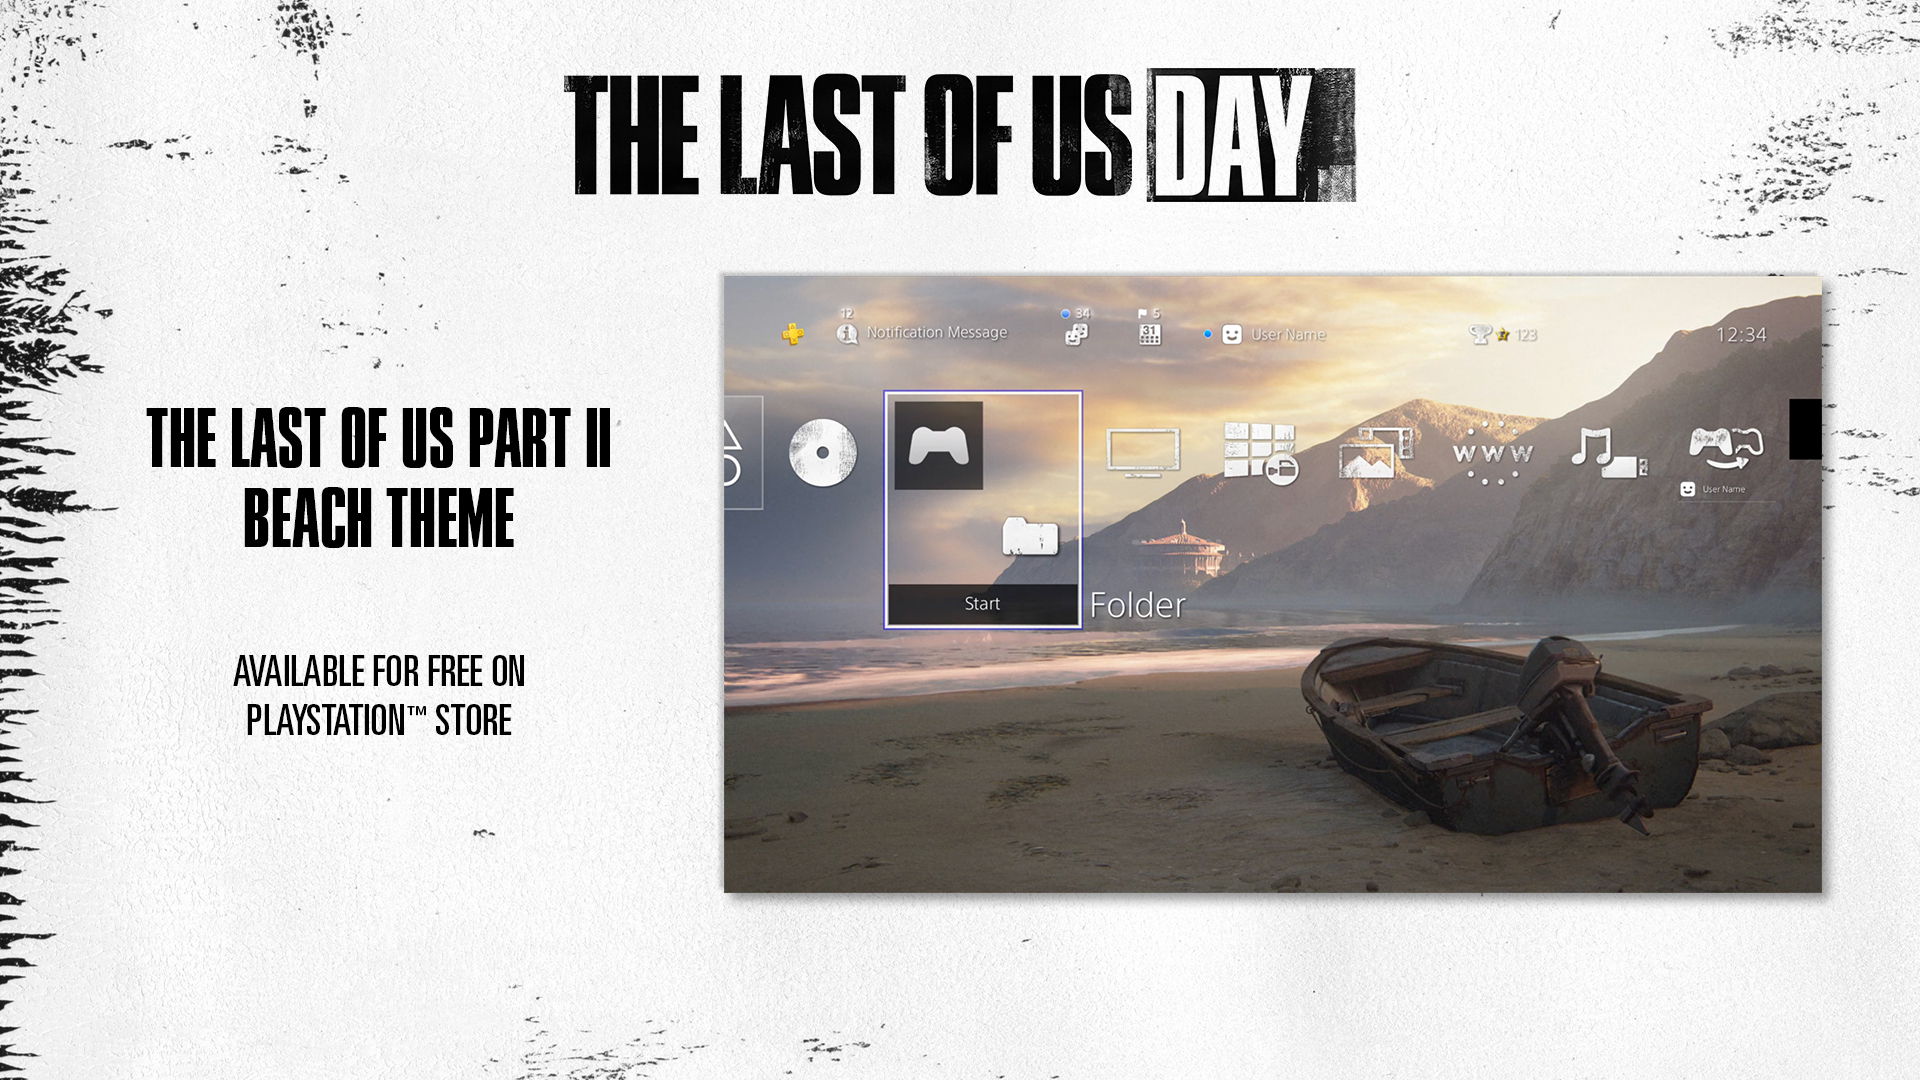 プレイステーション公式 Na Twitterze Ps4用テーマ無料配布 本日 The Last Of Us Day を記念して The Last Of Us Part Ii の新たなps4用テーマ 浜辺 を無料配信 期間限定で各種アバターも無料配信中 テーマdlはこちら T Co X9ncgmalu6